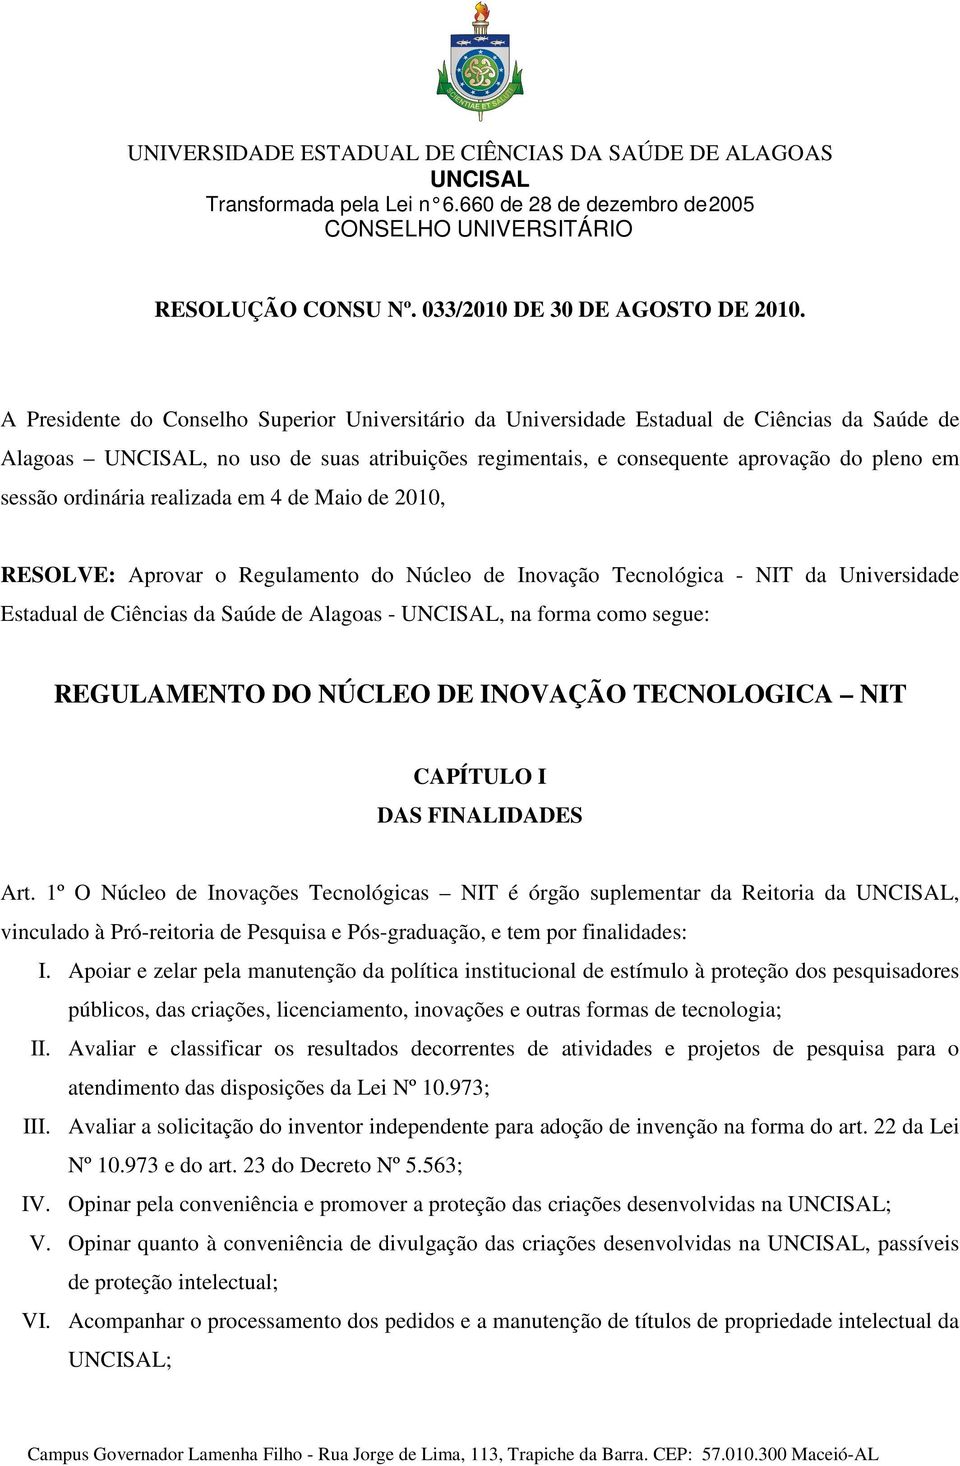 realizada em 4 de Maio de 21, RESOLVE: Aprovar o Regulamento do Núcleo de Inovação Tecnológica - NIT da Universidade Estadual de Ciências da Saúde de Alagoas -, na forma como segue: REGULAMENTO DO